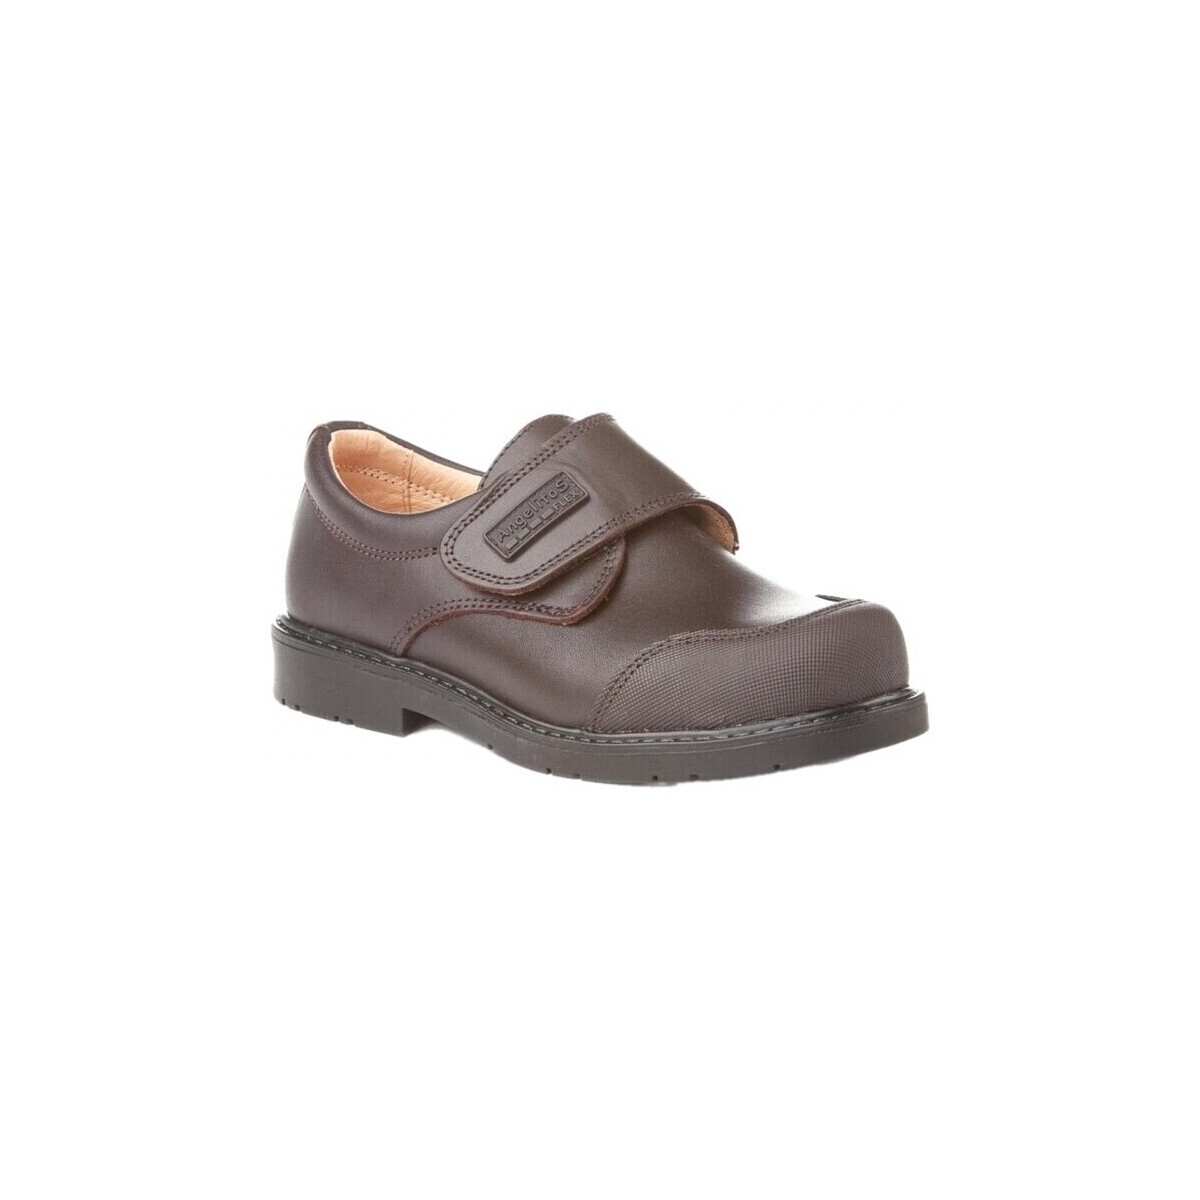 Παπούτσια Μοκασσίνια Angelitos 21875-20 Brown